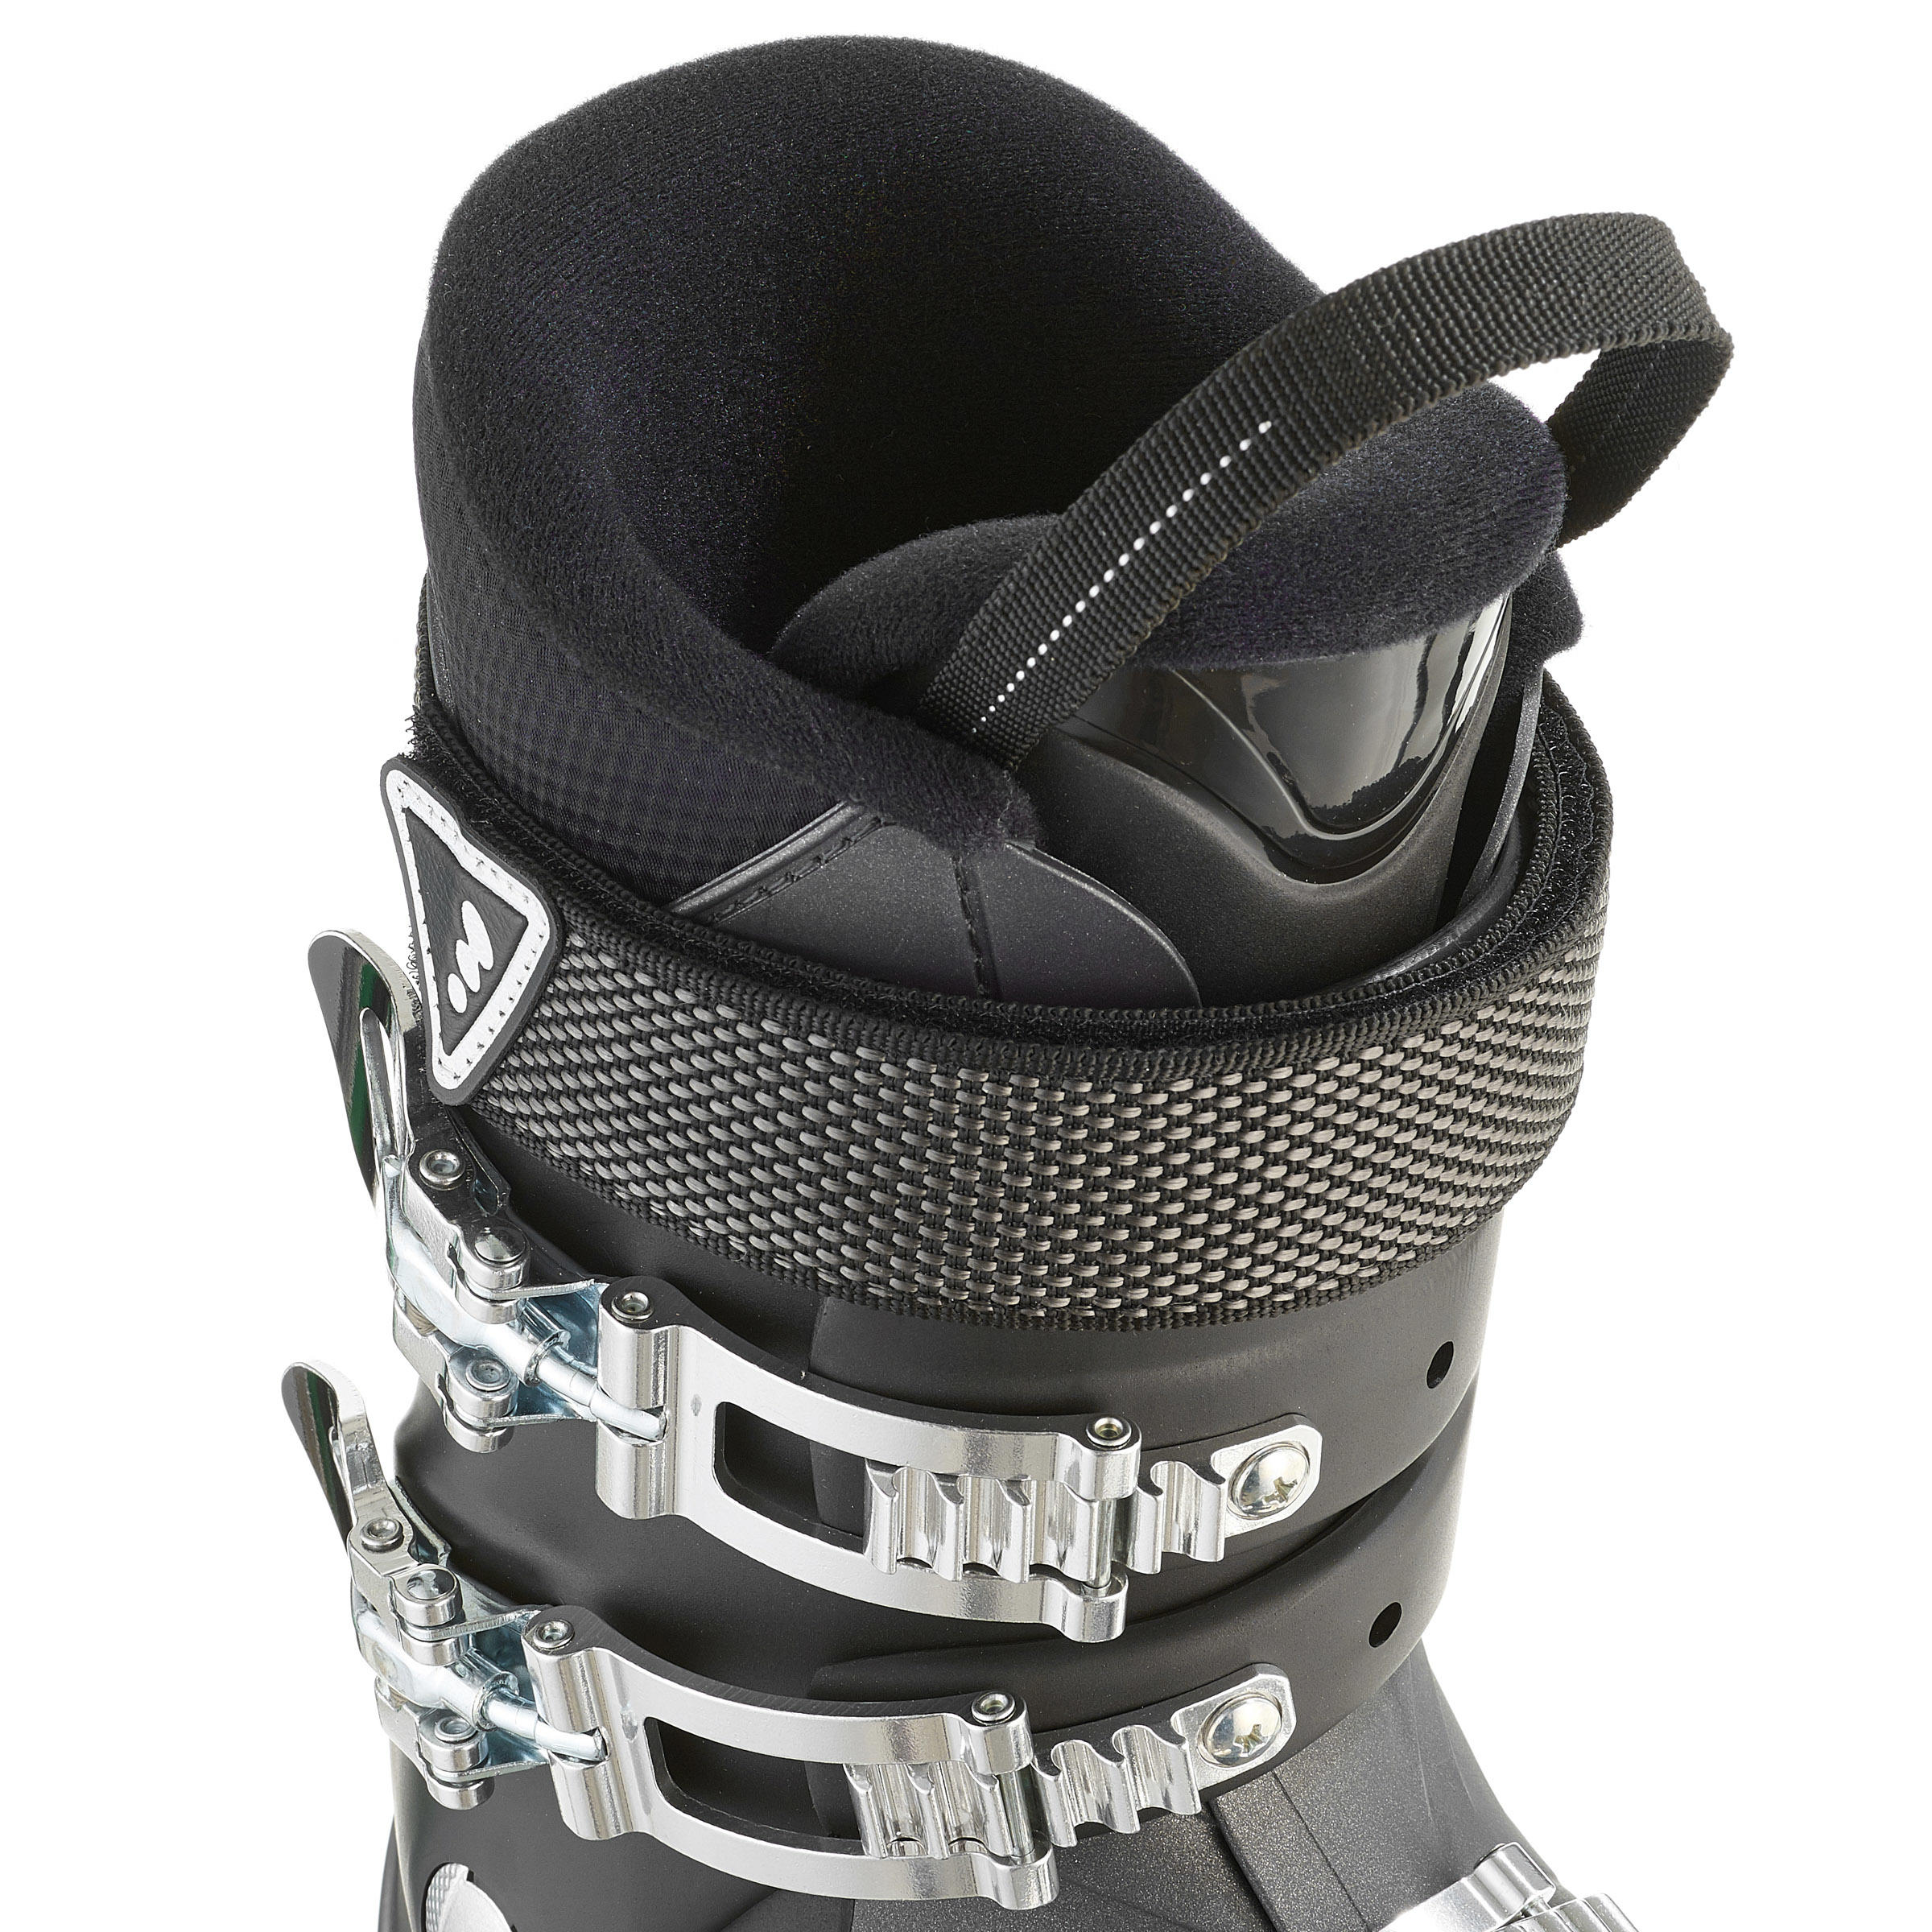 Men's Downhill Ski Boots Wid Black 6/10